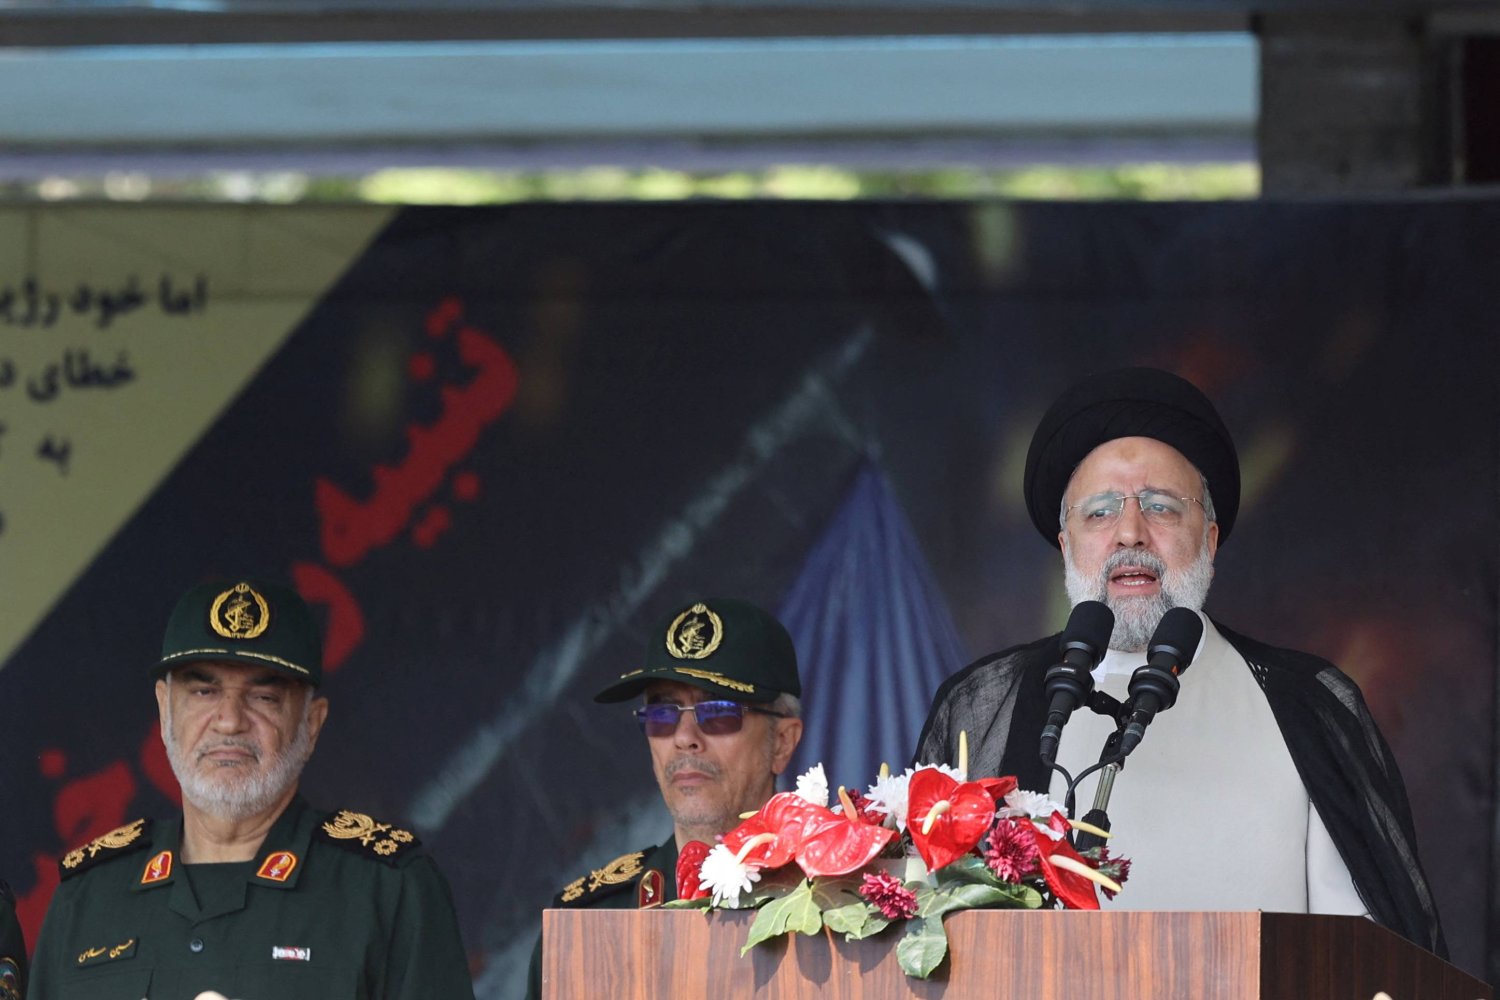 الرئيس الإيراني إبراهيم رئيسي يلقي خطاباً خلال حفل عرض يوم الجيش الوطني في طهران (رويترز)